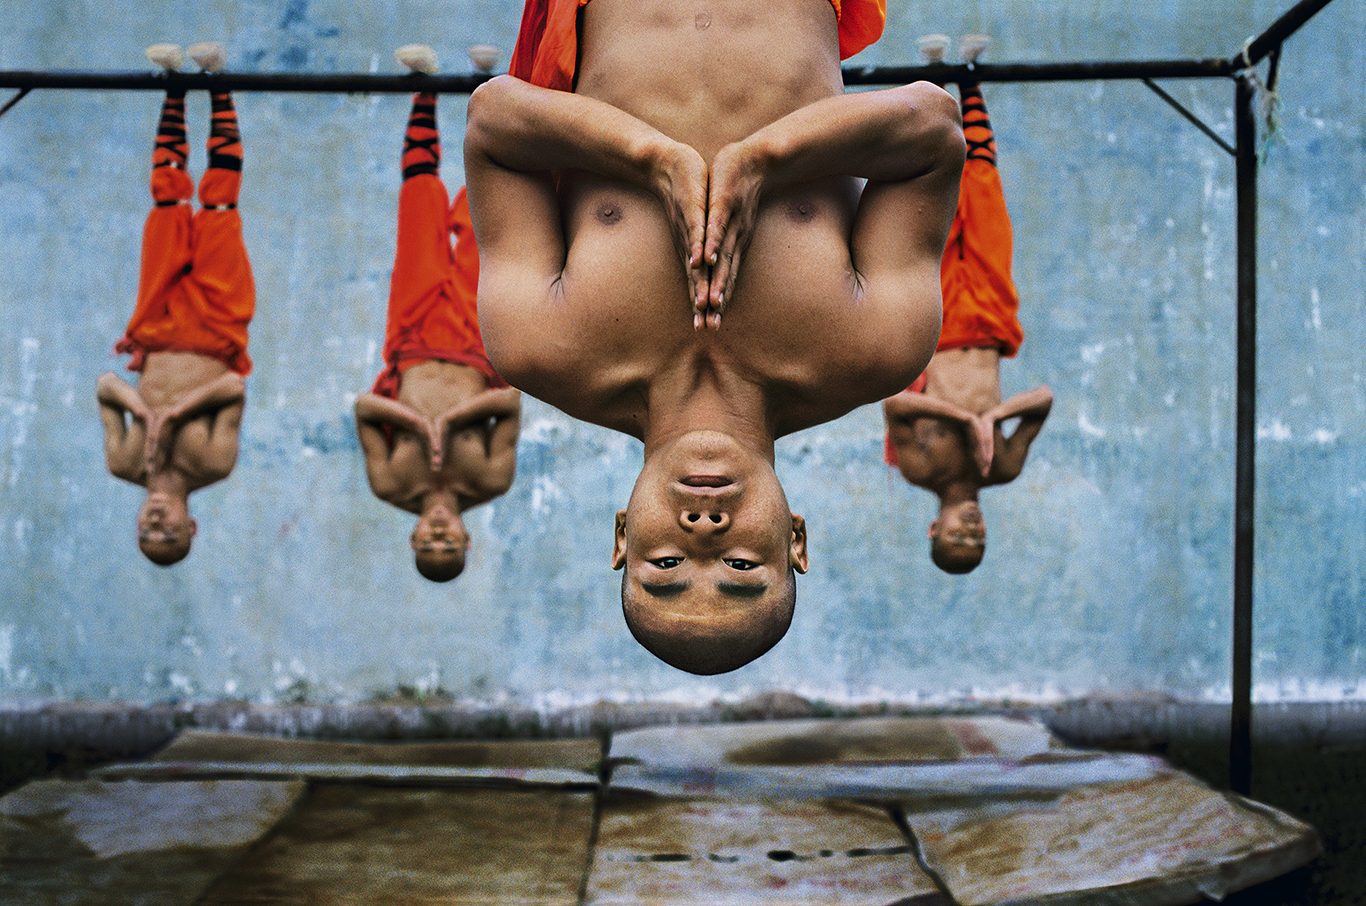 Стив МакКарри. Тренировка шаолиньских монахов. Чжэнчжоу, Китай, 2004
